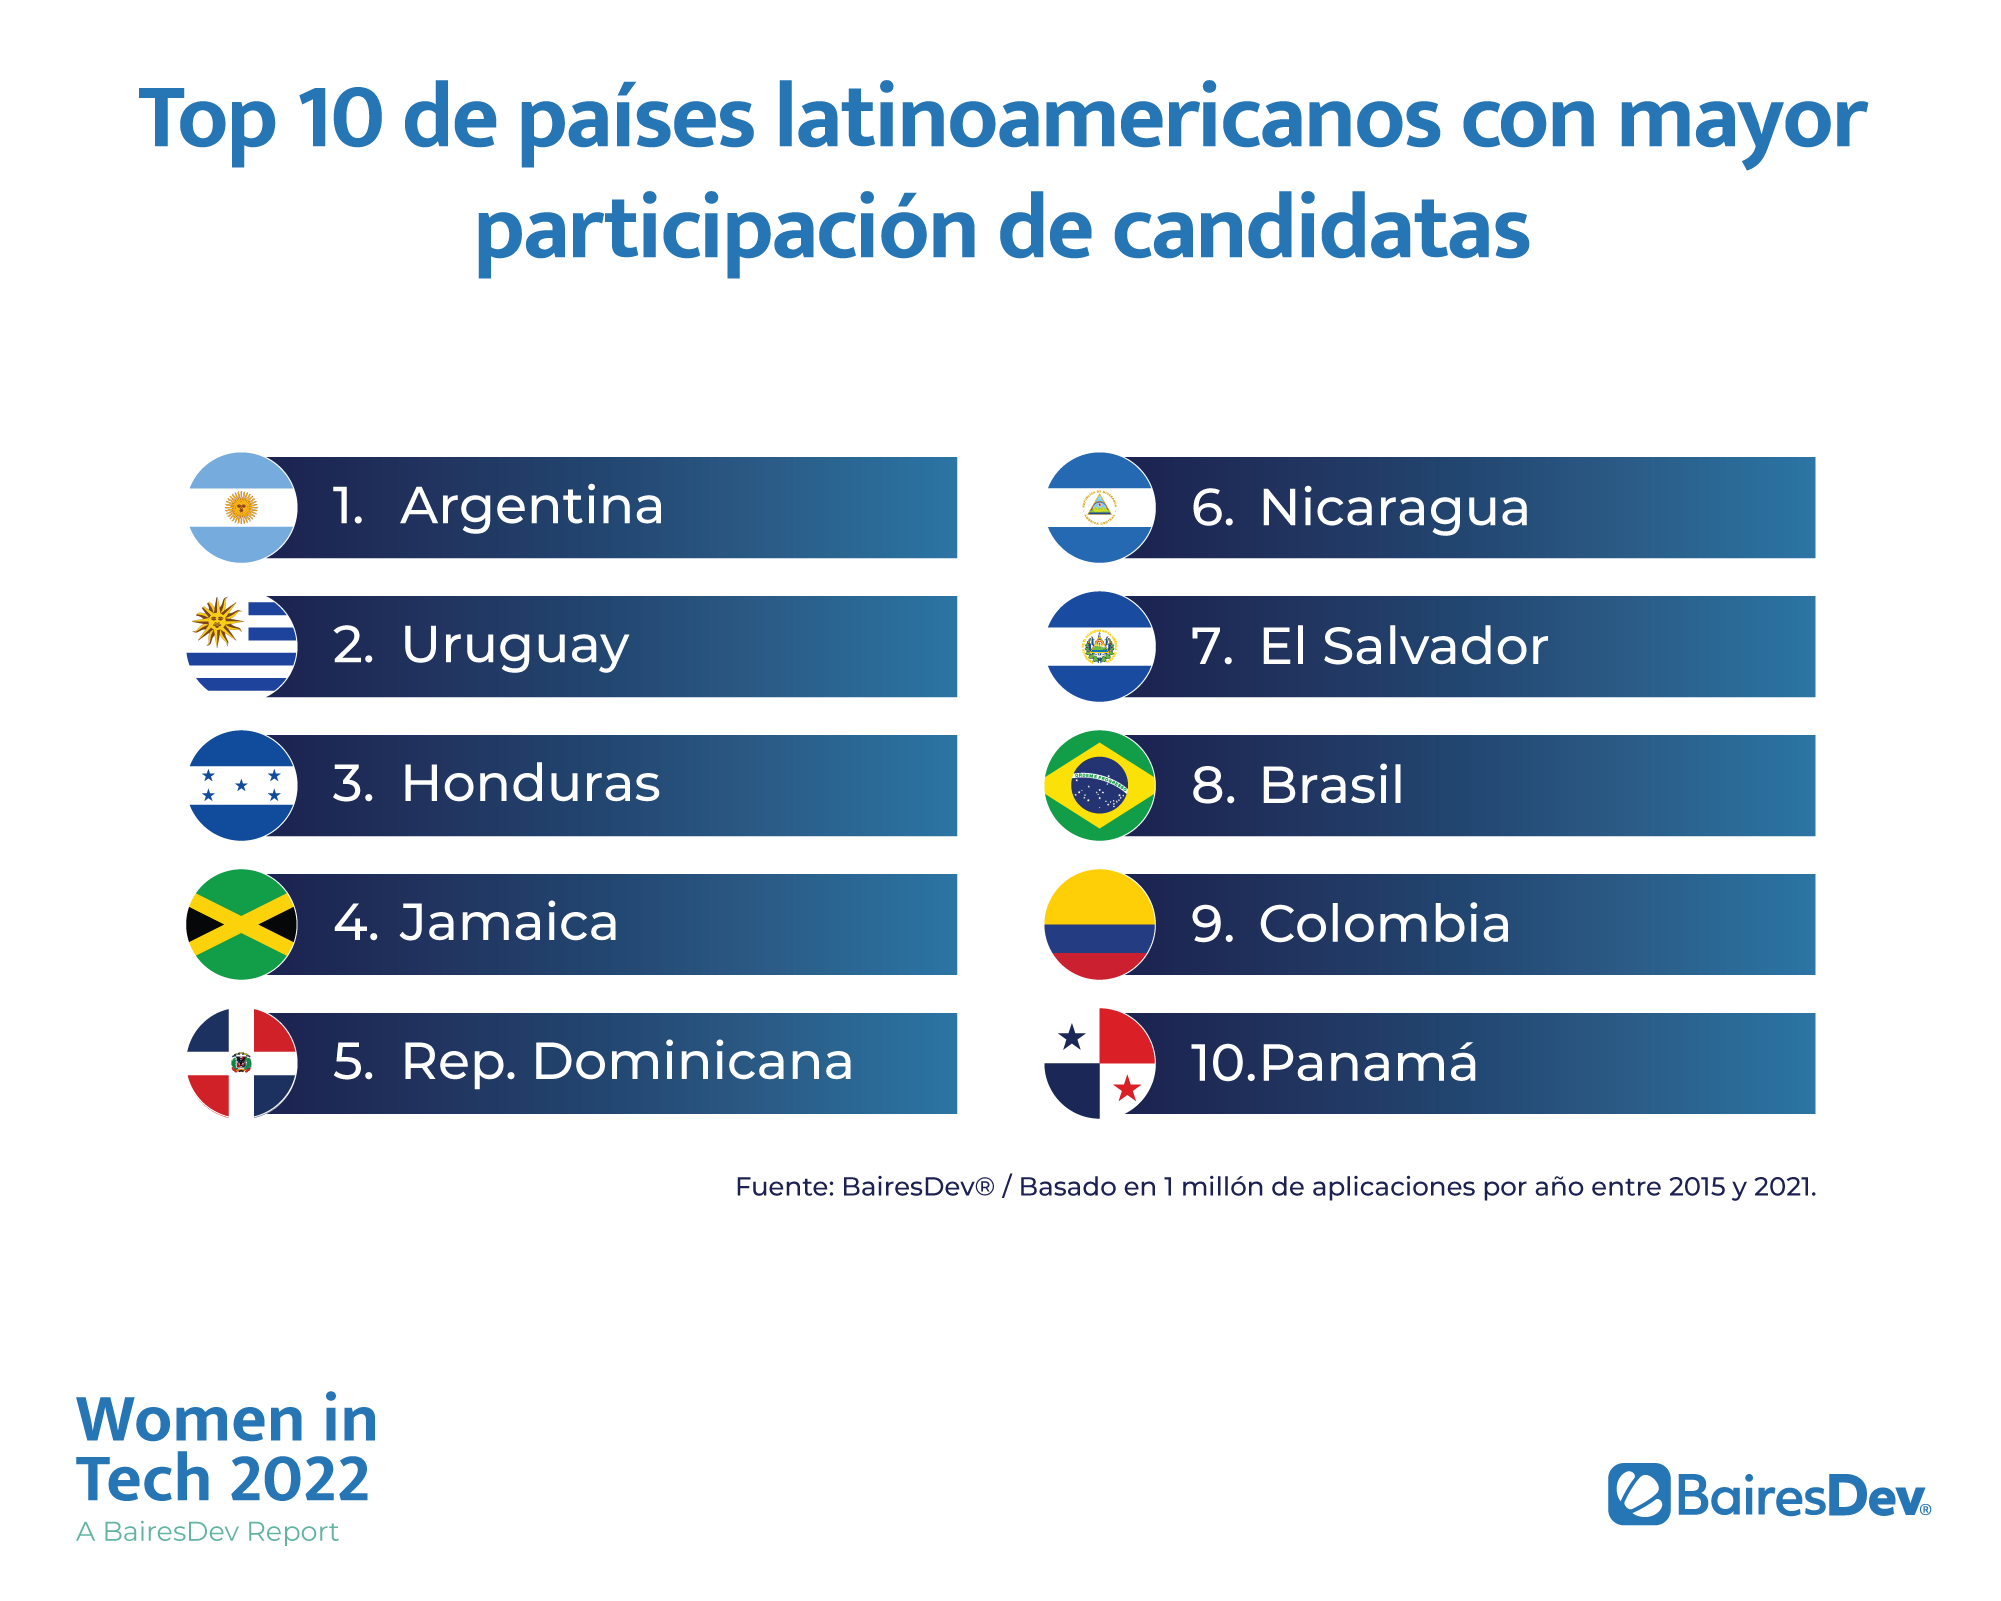 Top 10 de países latinoamericanos con mayor participación de candidatas